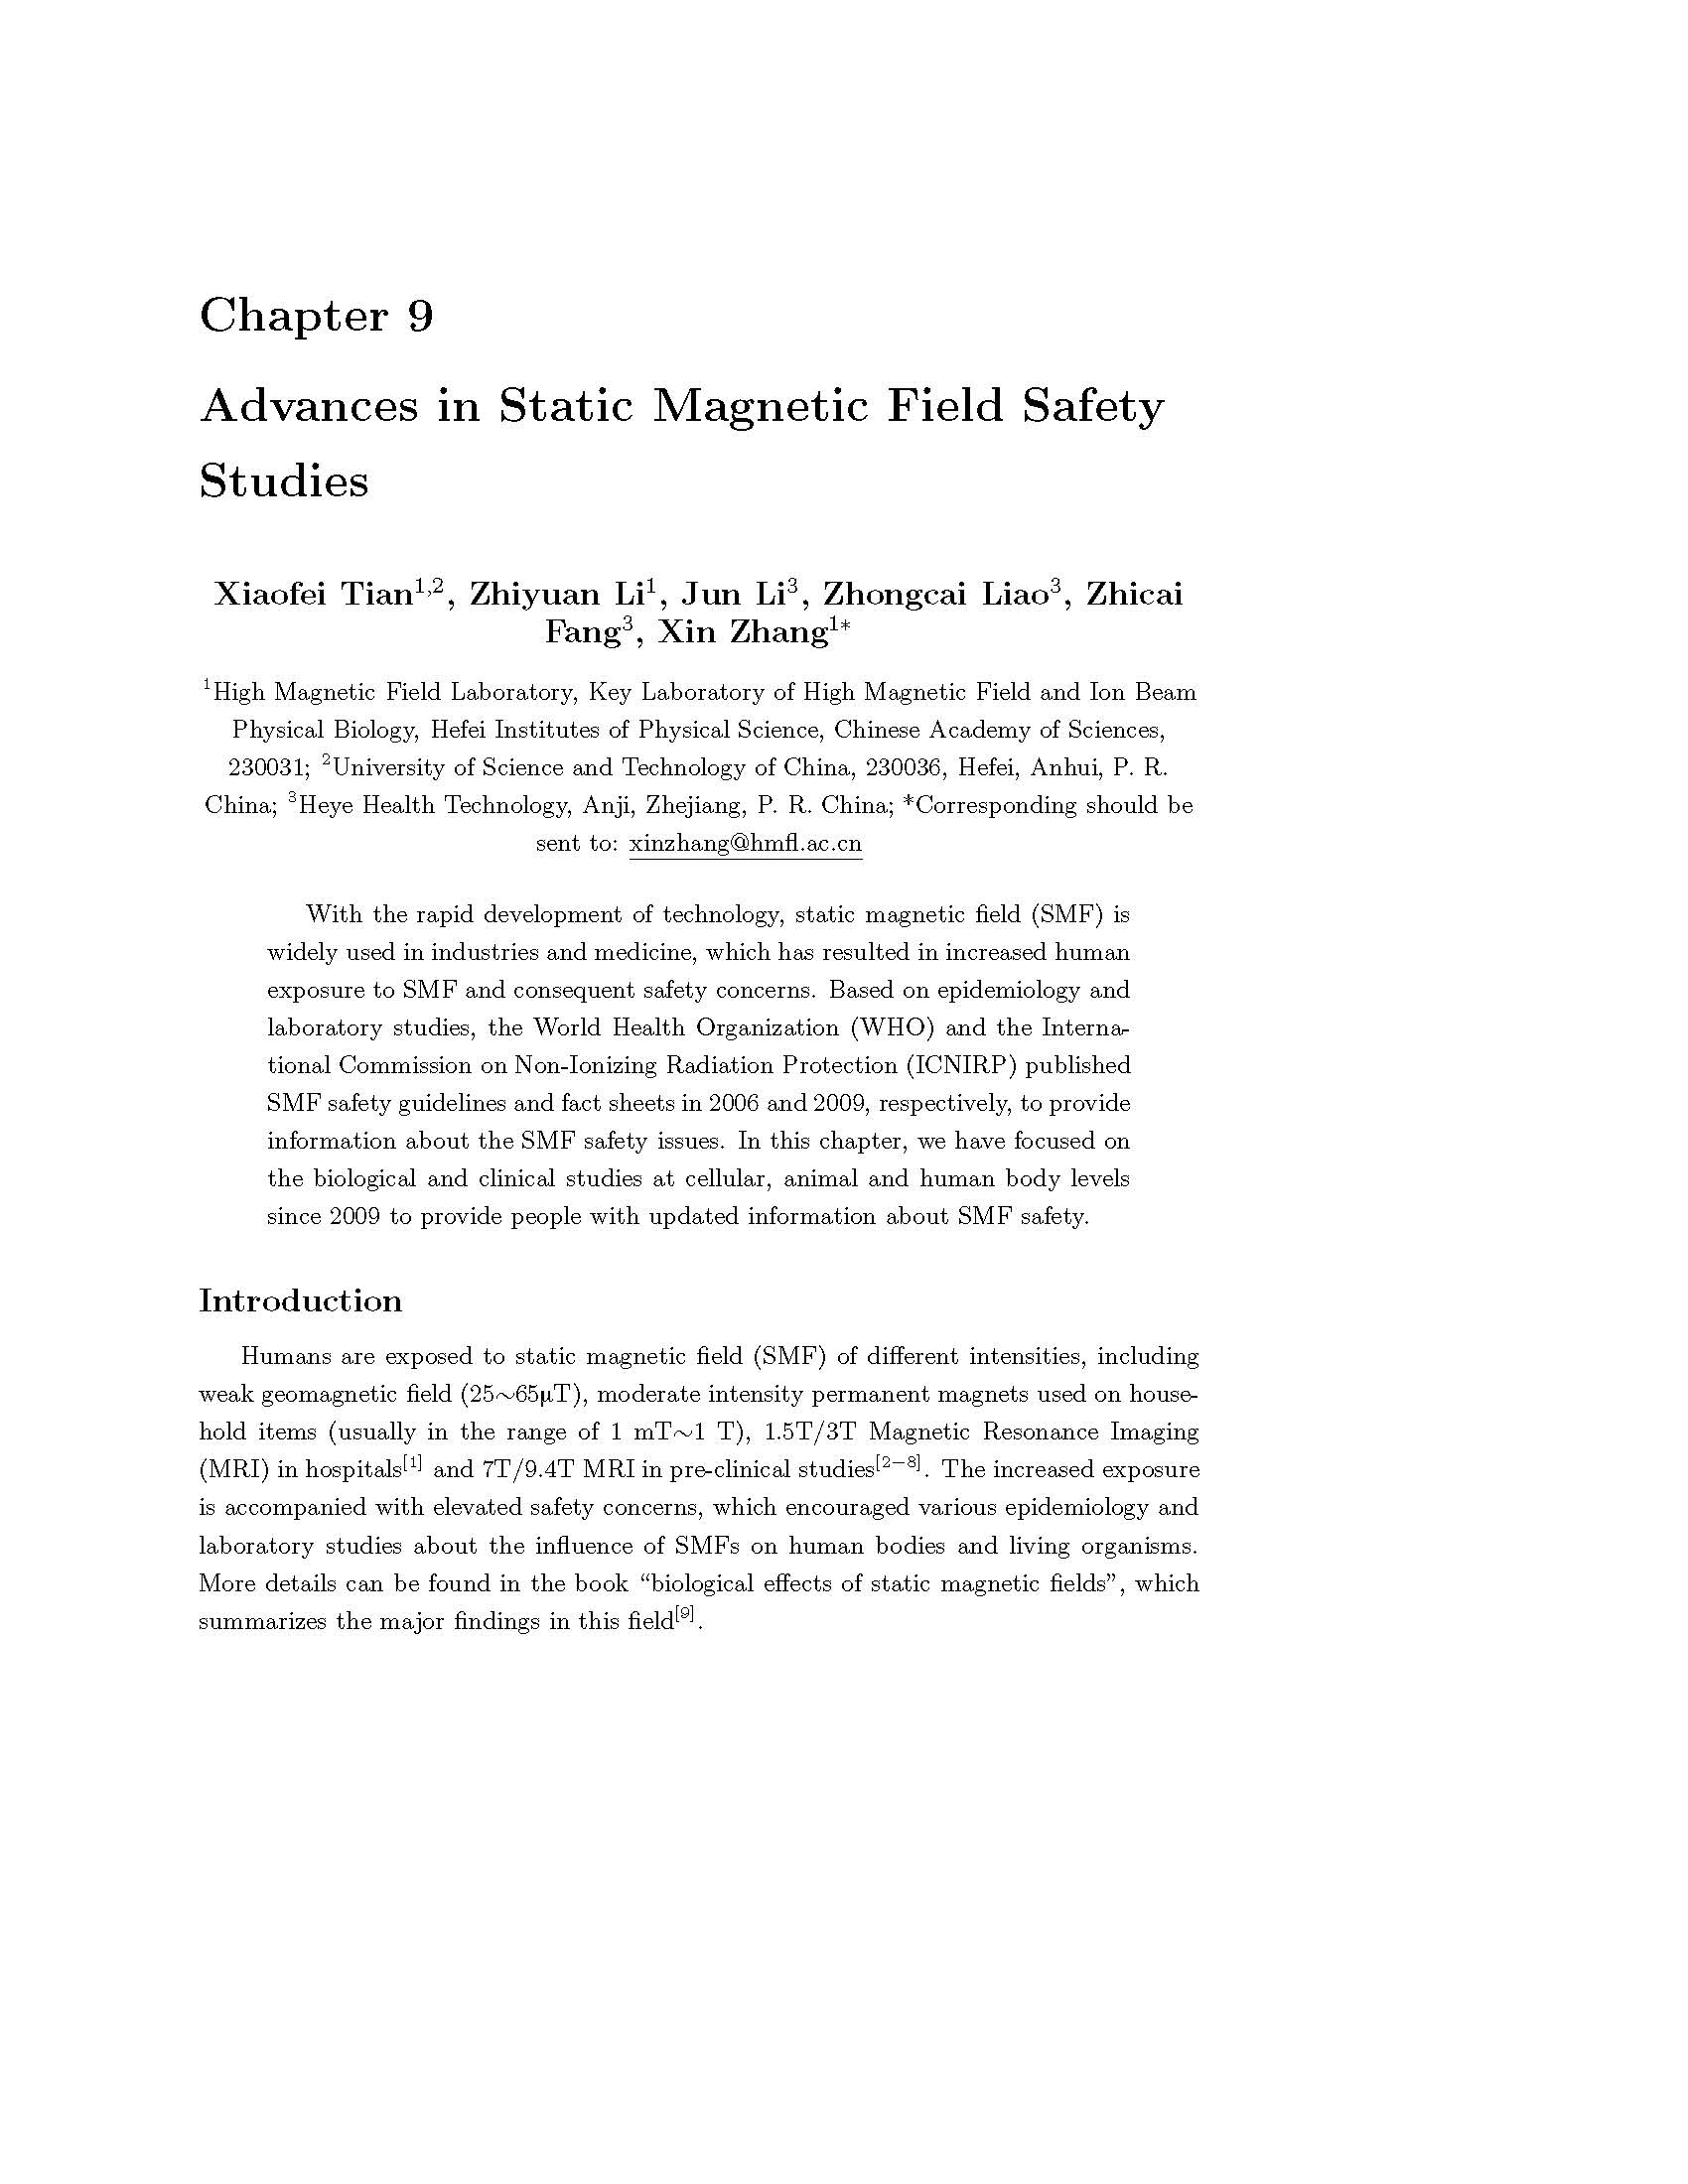 18、署名专著Interdisciplinary Research of Magnetic Fields and Life Sciences【2018 张欣】_页面_03